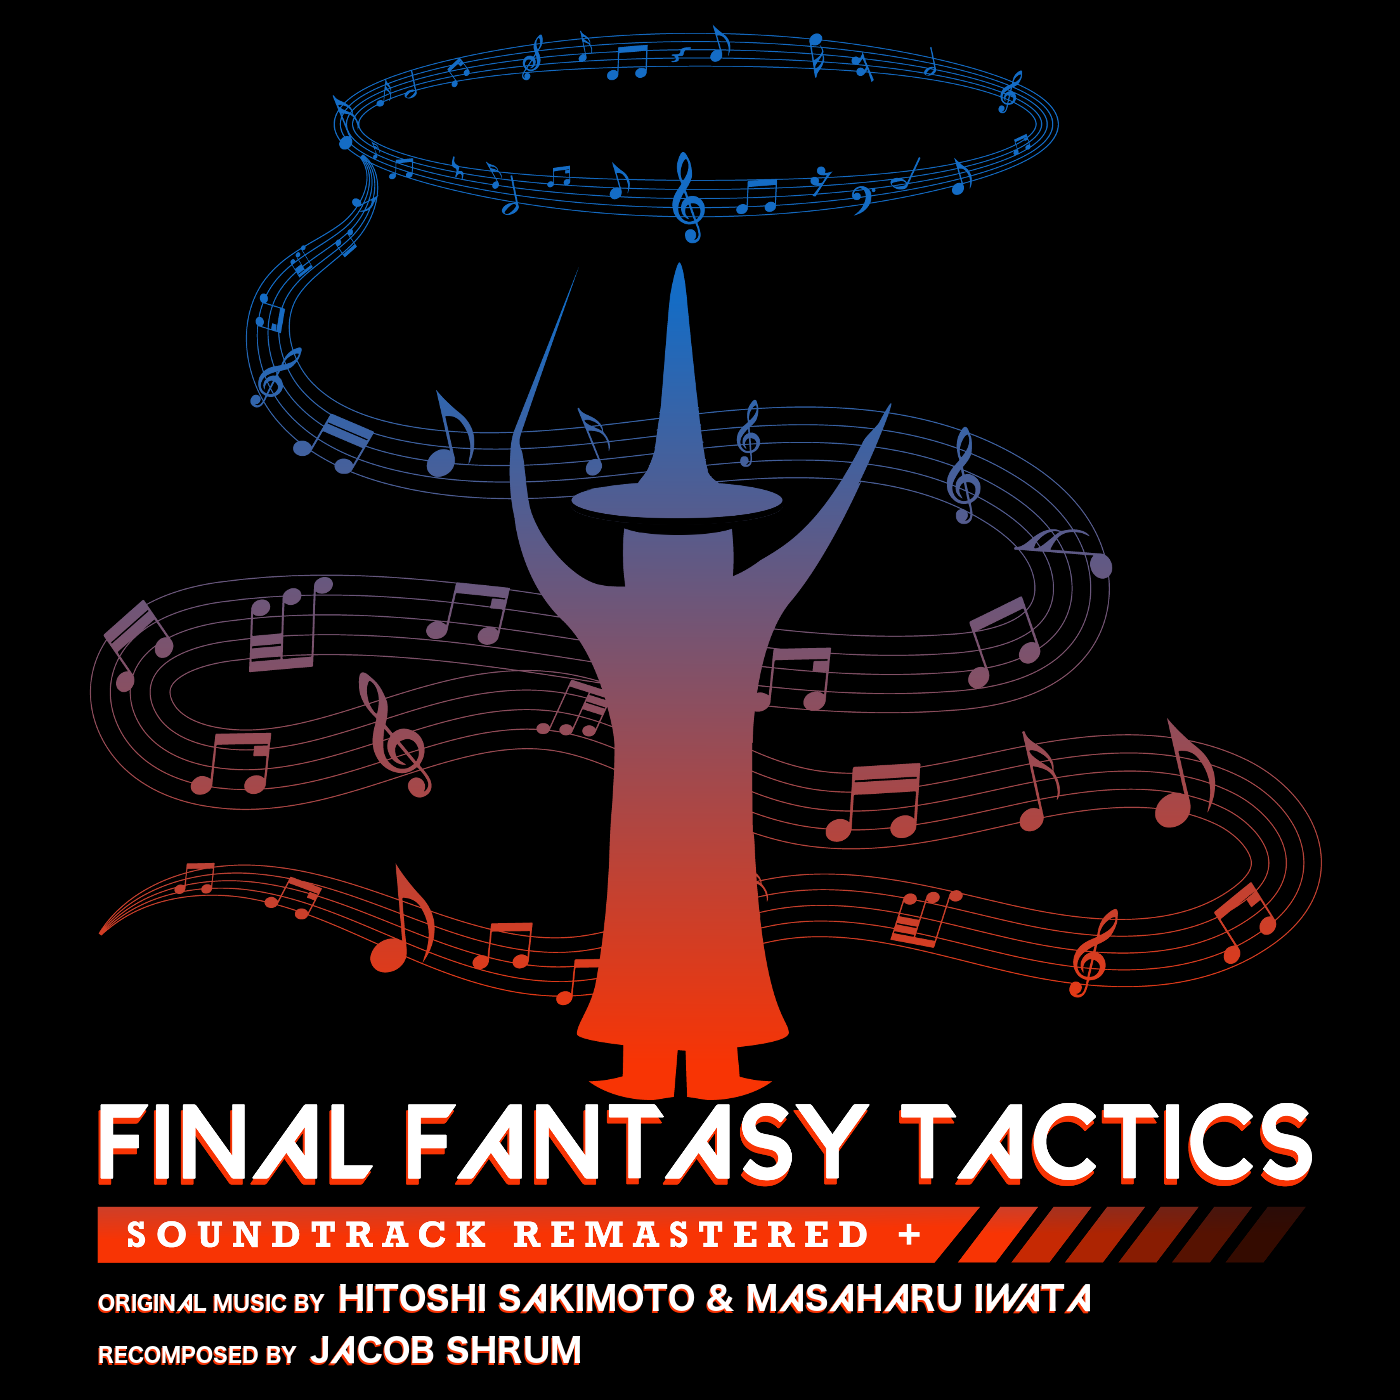 Verpletteren zoeken kolf Final Fantasy Tactics Remastered + (2021) MP3 - Download Final Fantasy  Tactics Remastered + (2021) Soundtracks for FREE!